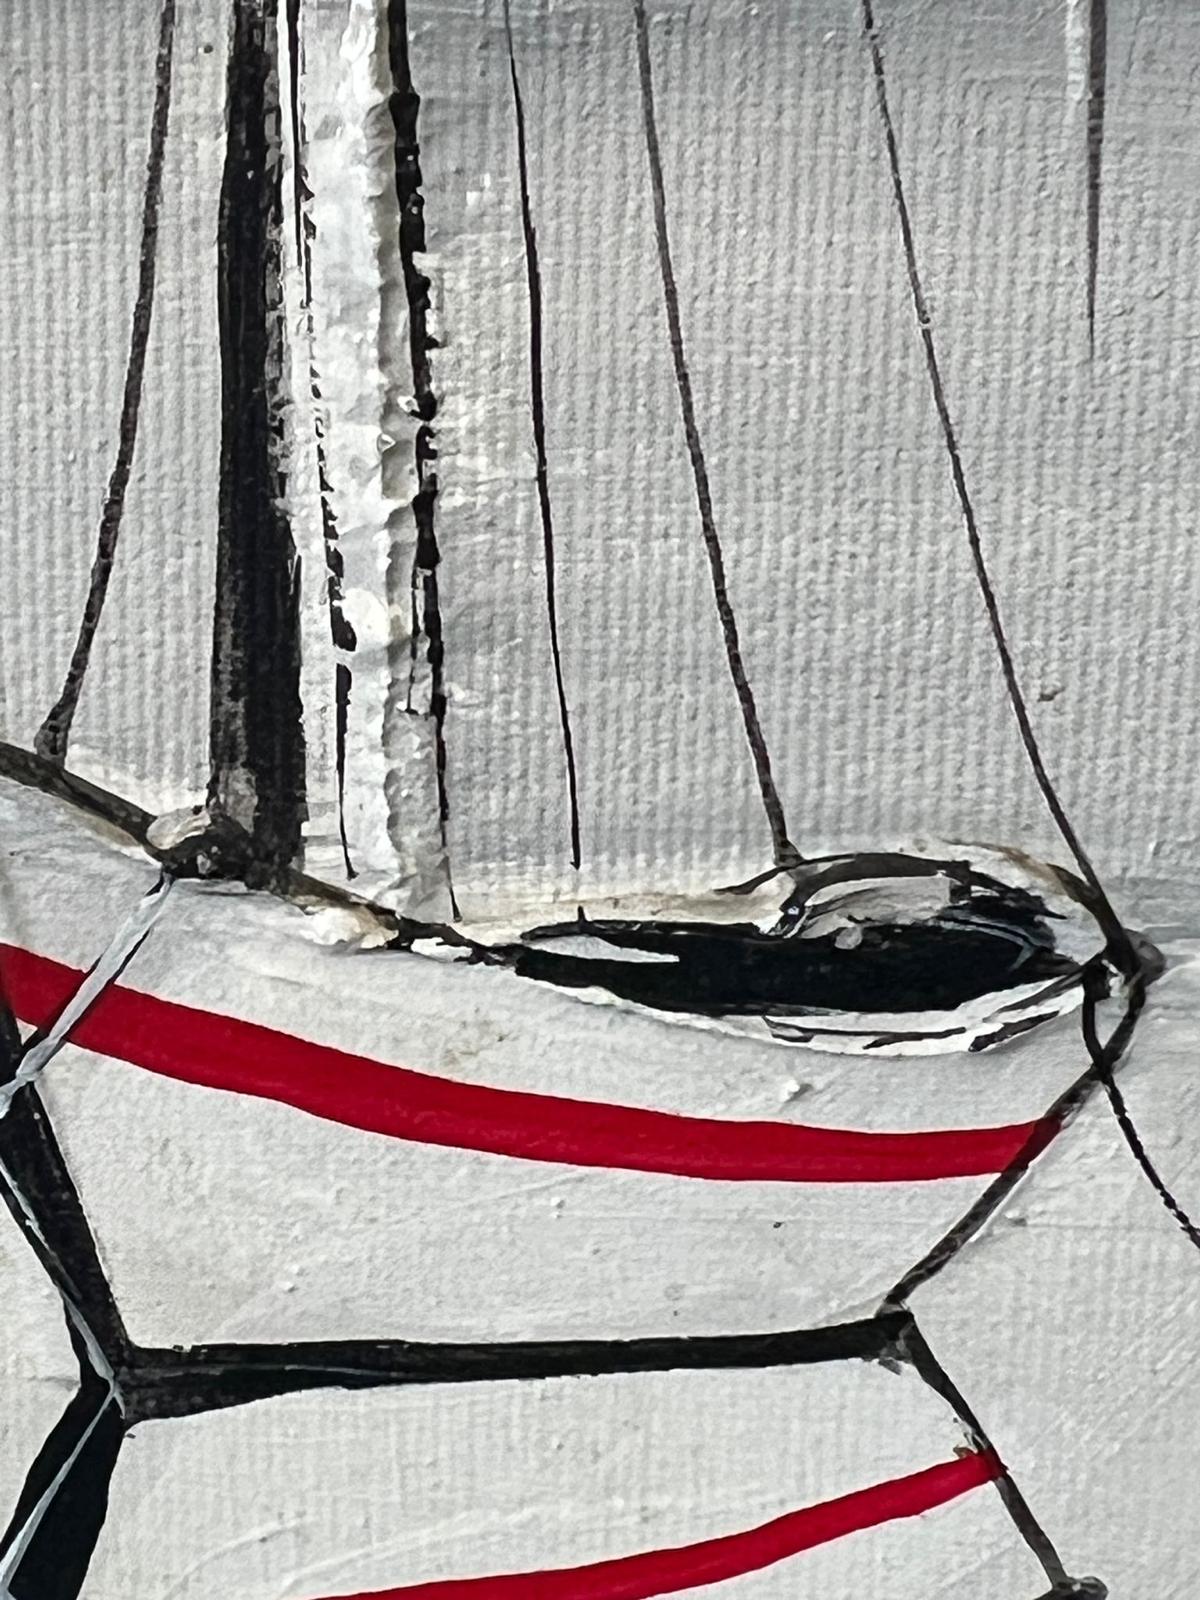 Marc B Denoun 'St Tropez' (43cm x 74cm) oil on canvas - Image 4 of 5